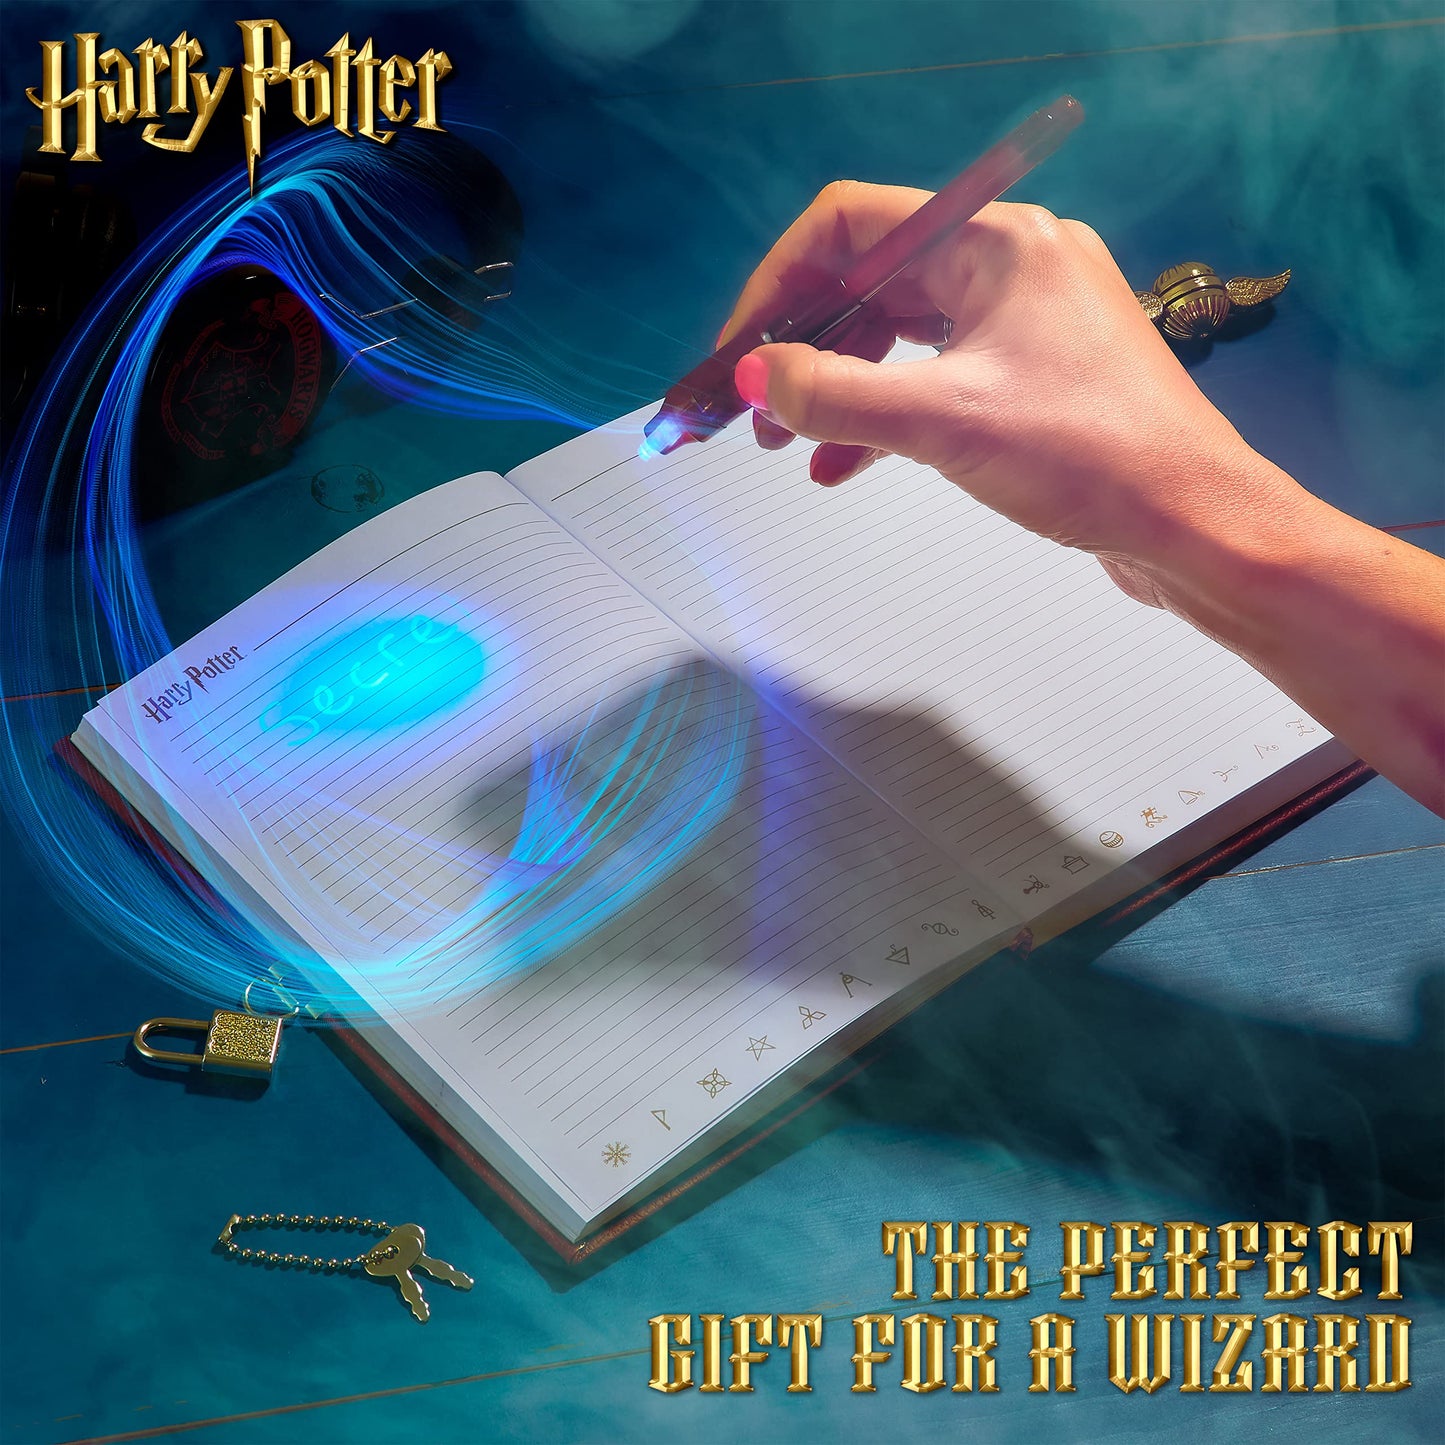 Diario Secreto de Harry Potter, Diario Mágico y Divertido con Cerradura Original